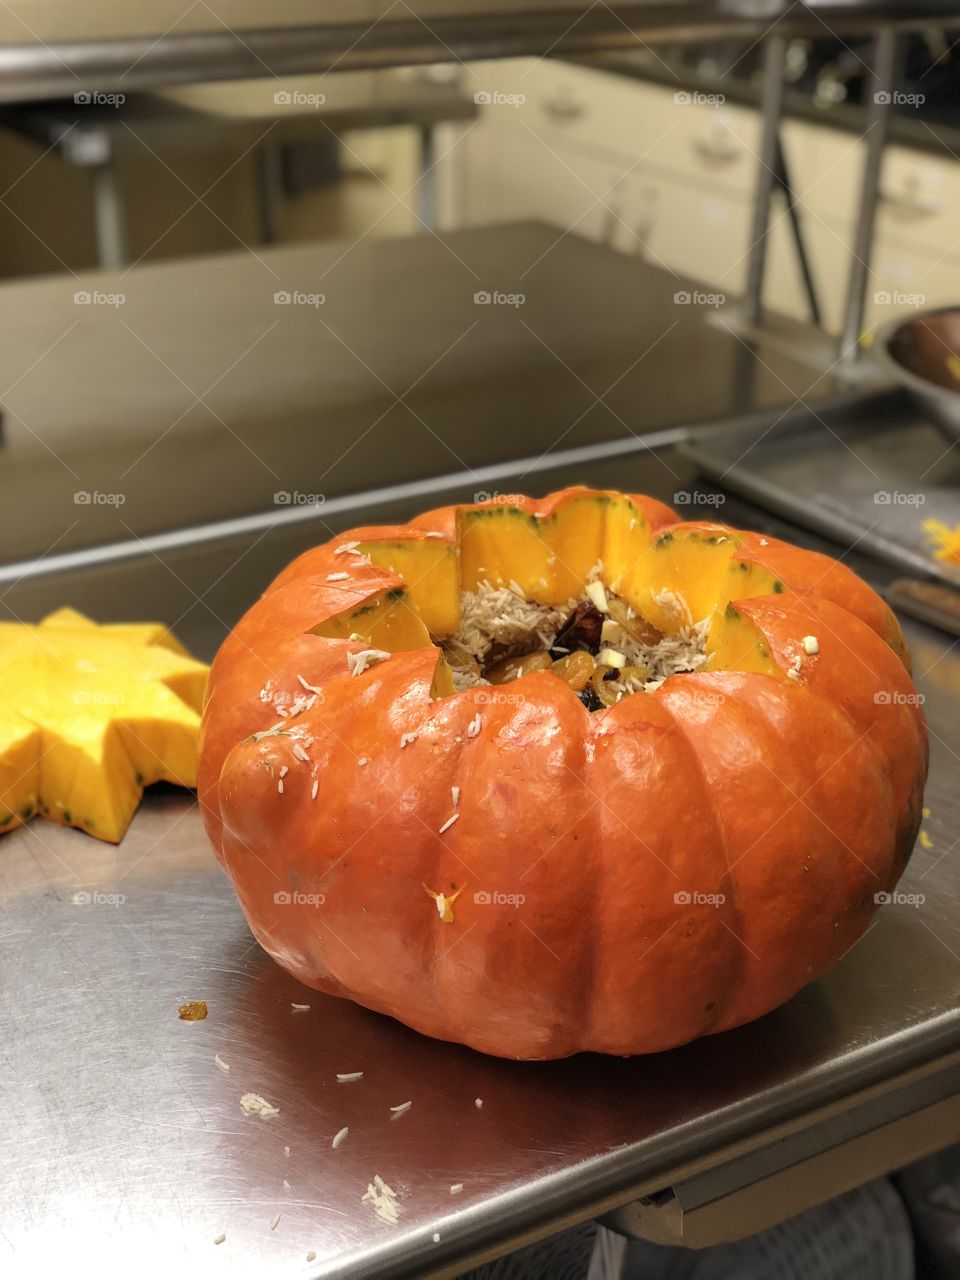 Cooking a pumpkin 